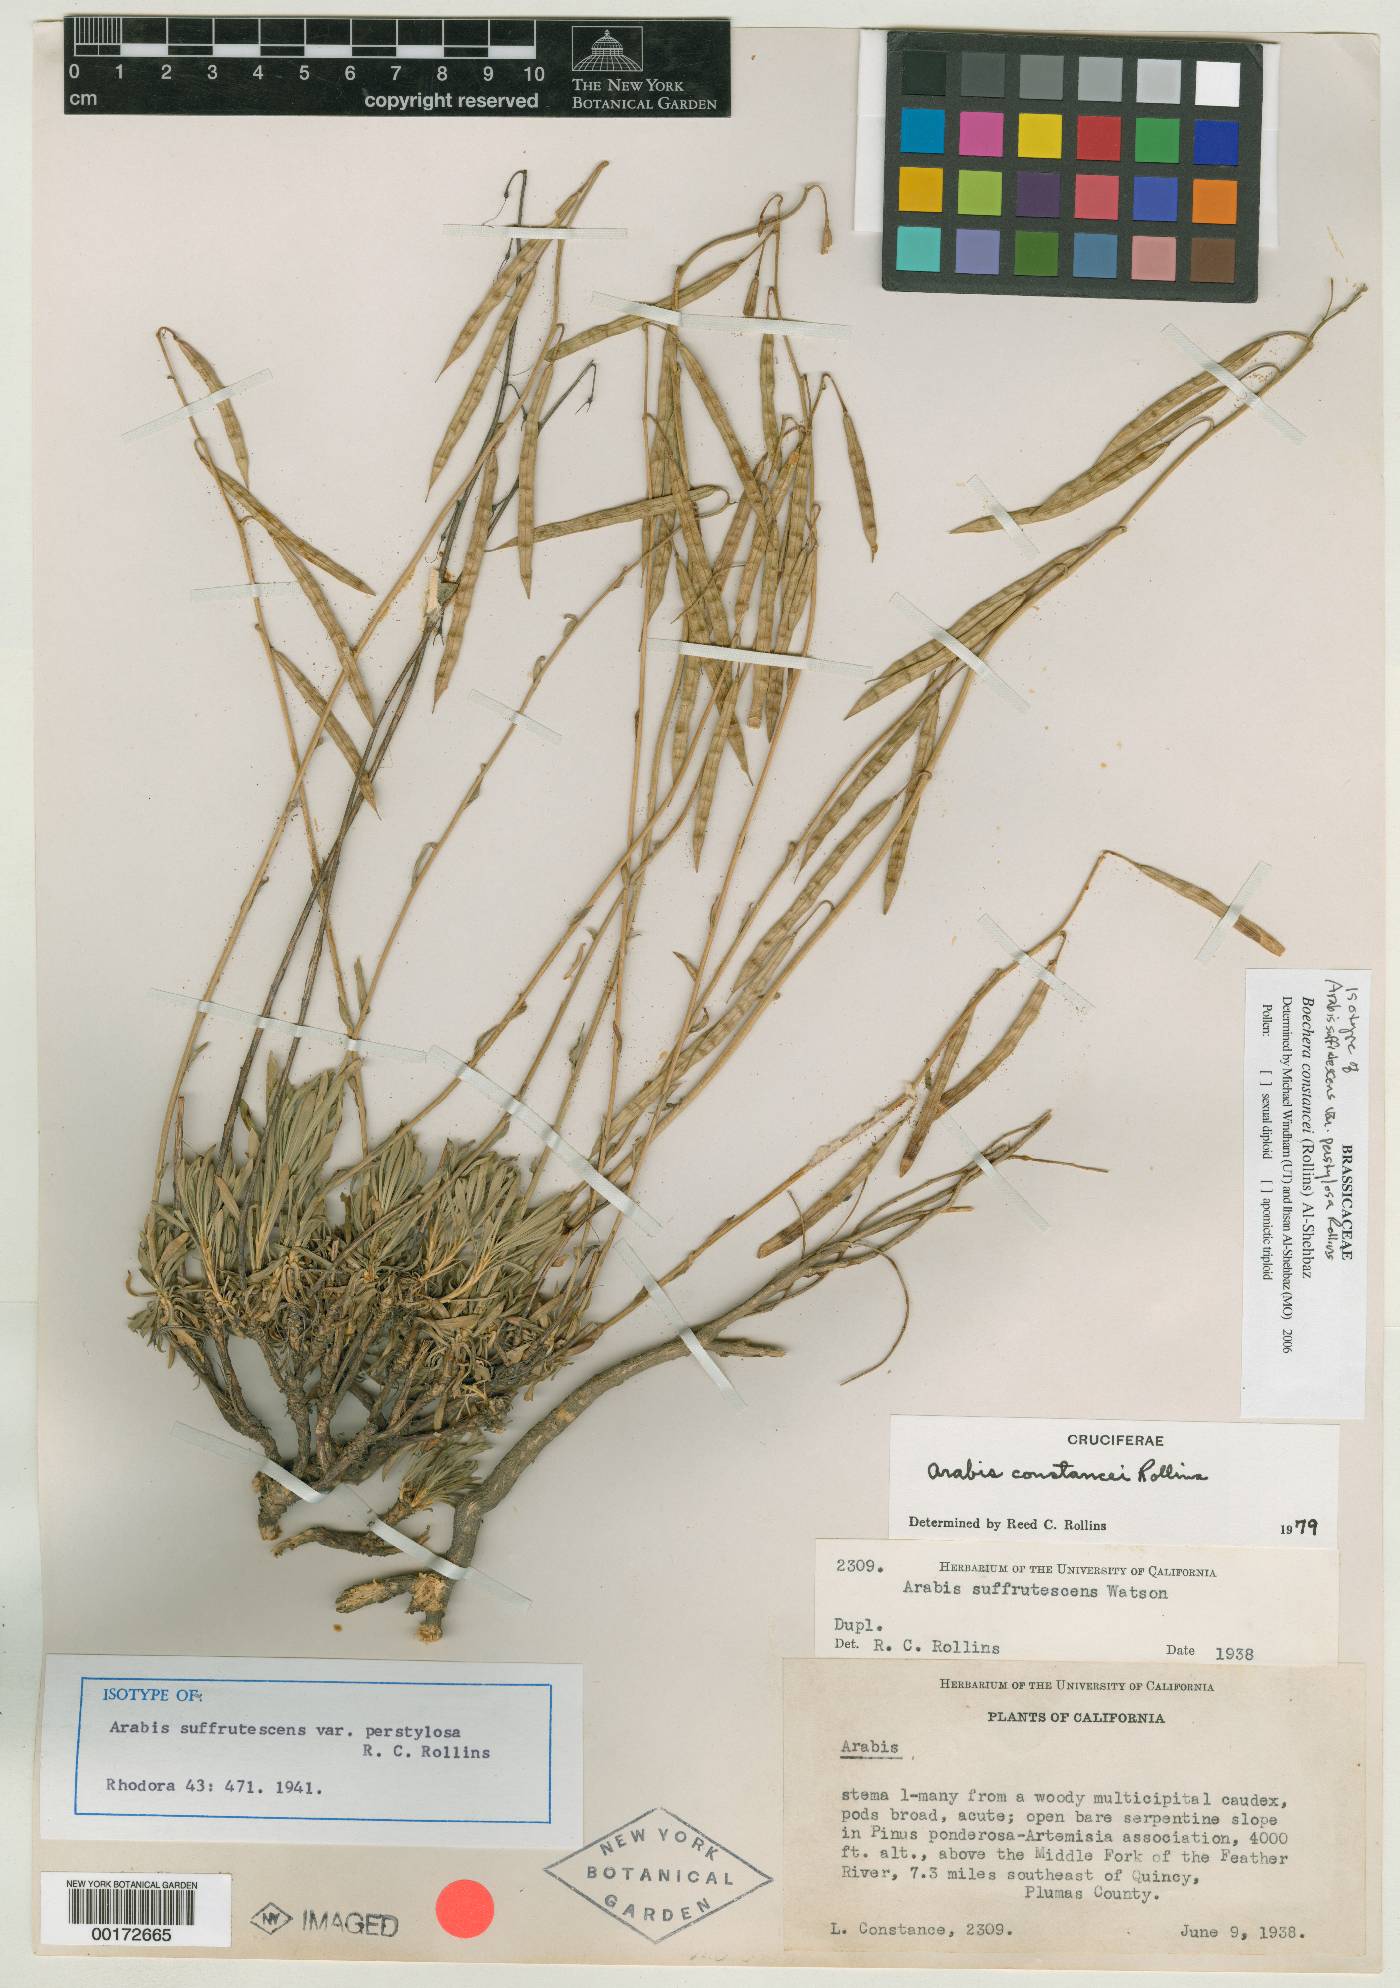 Arabis suffrutescens var. perstylosa image